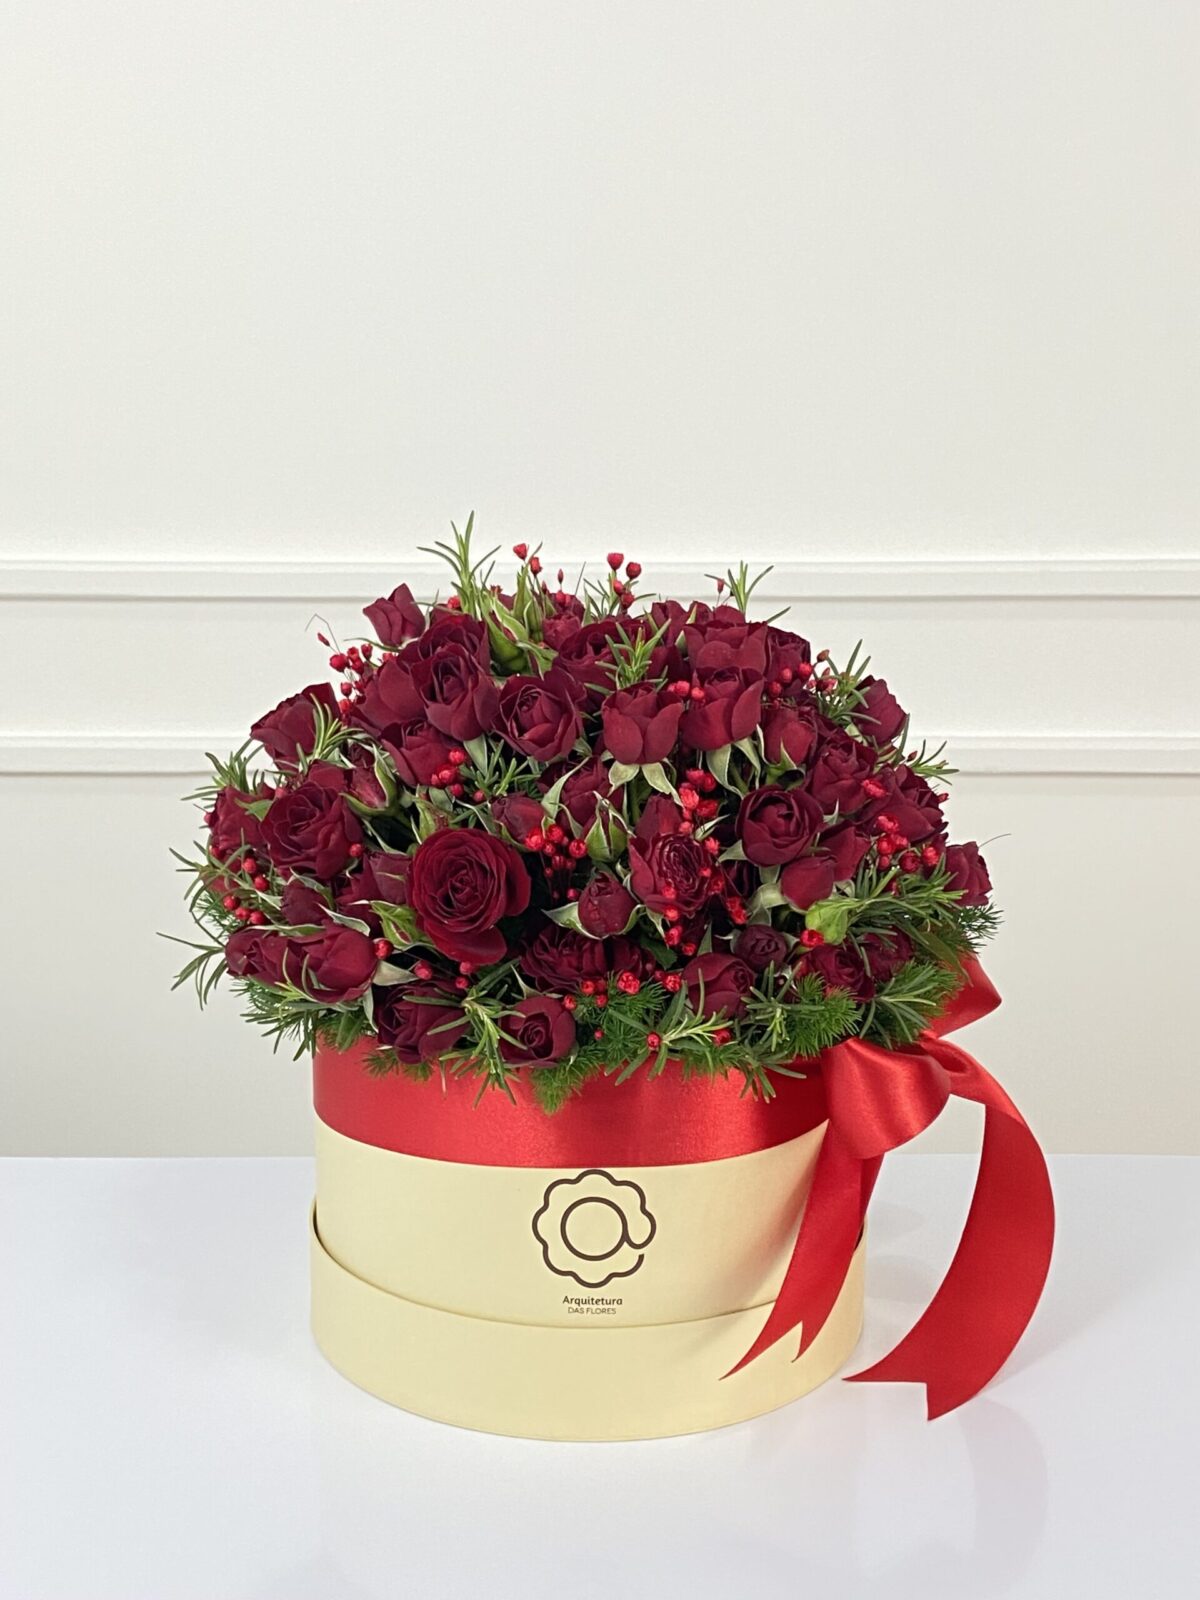 soneto box com mini rosas vermelhas arquitetura das flores porto alegre 6 scaled